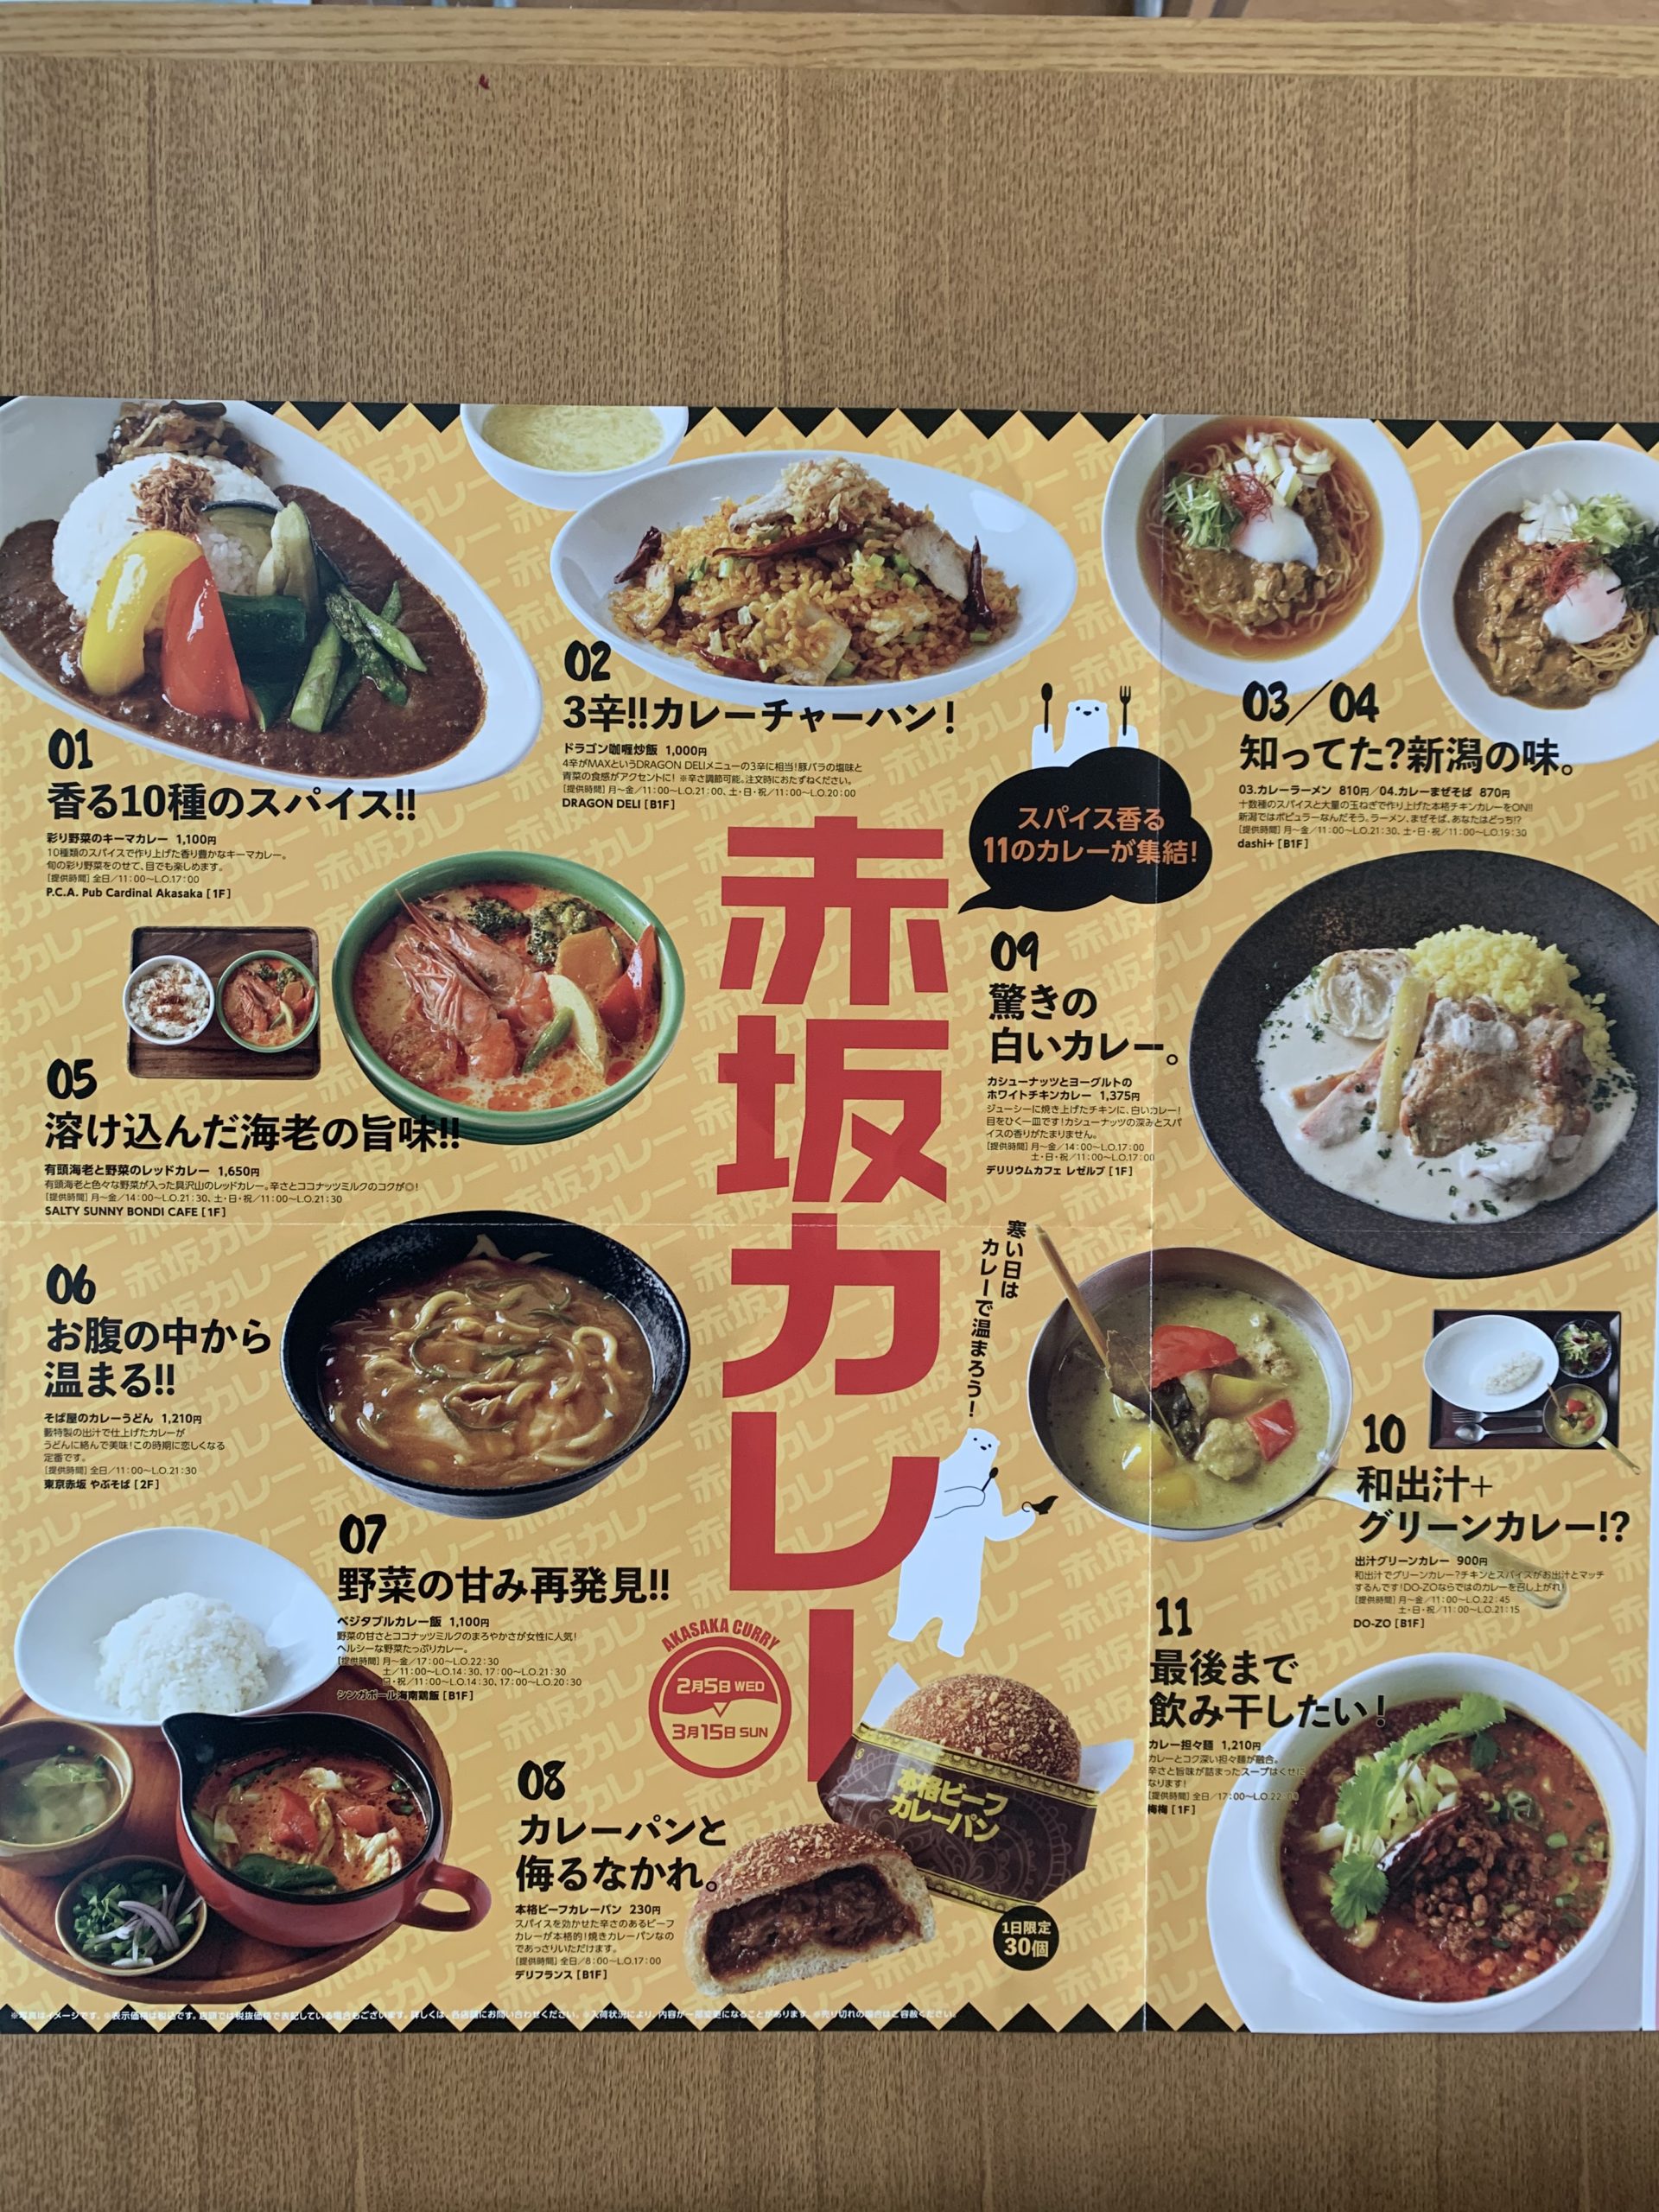 「赤坂カレー」bizタワーレストランで開催中